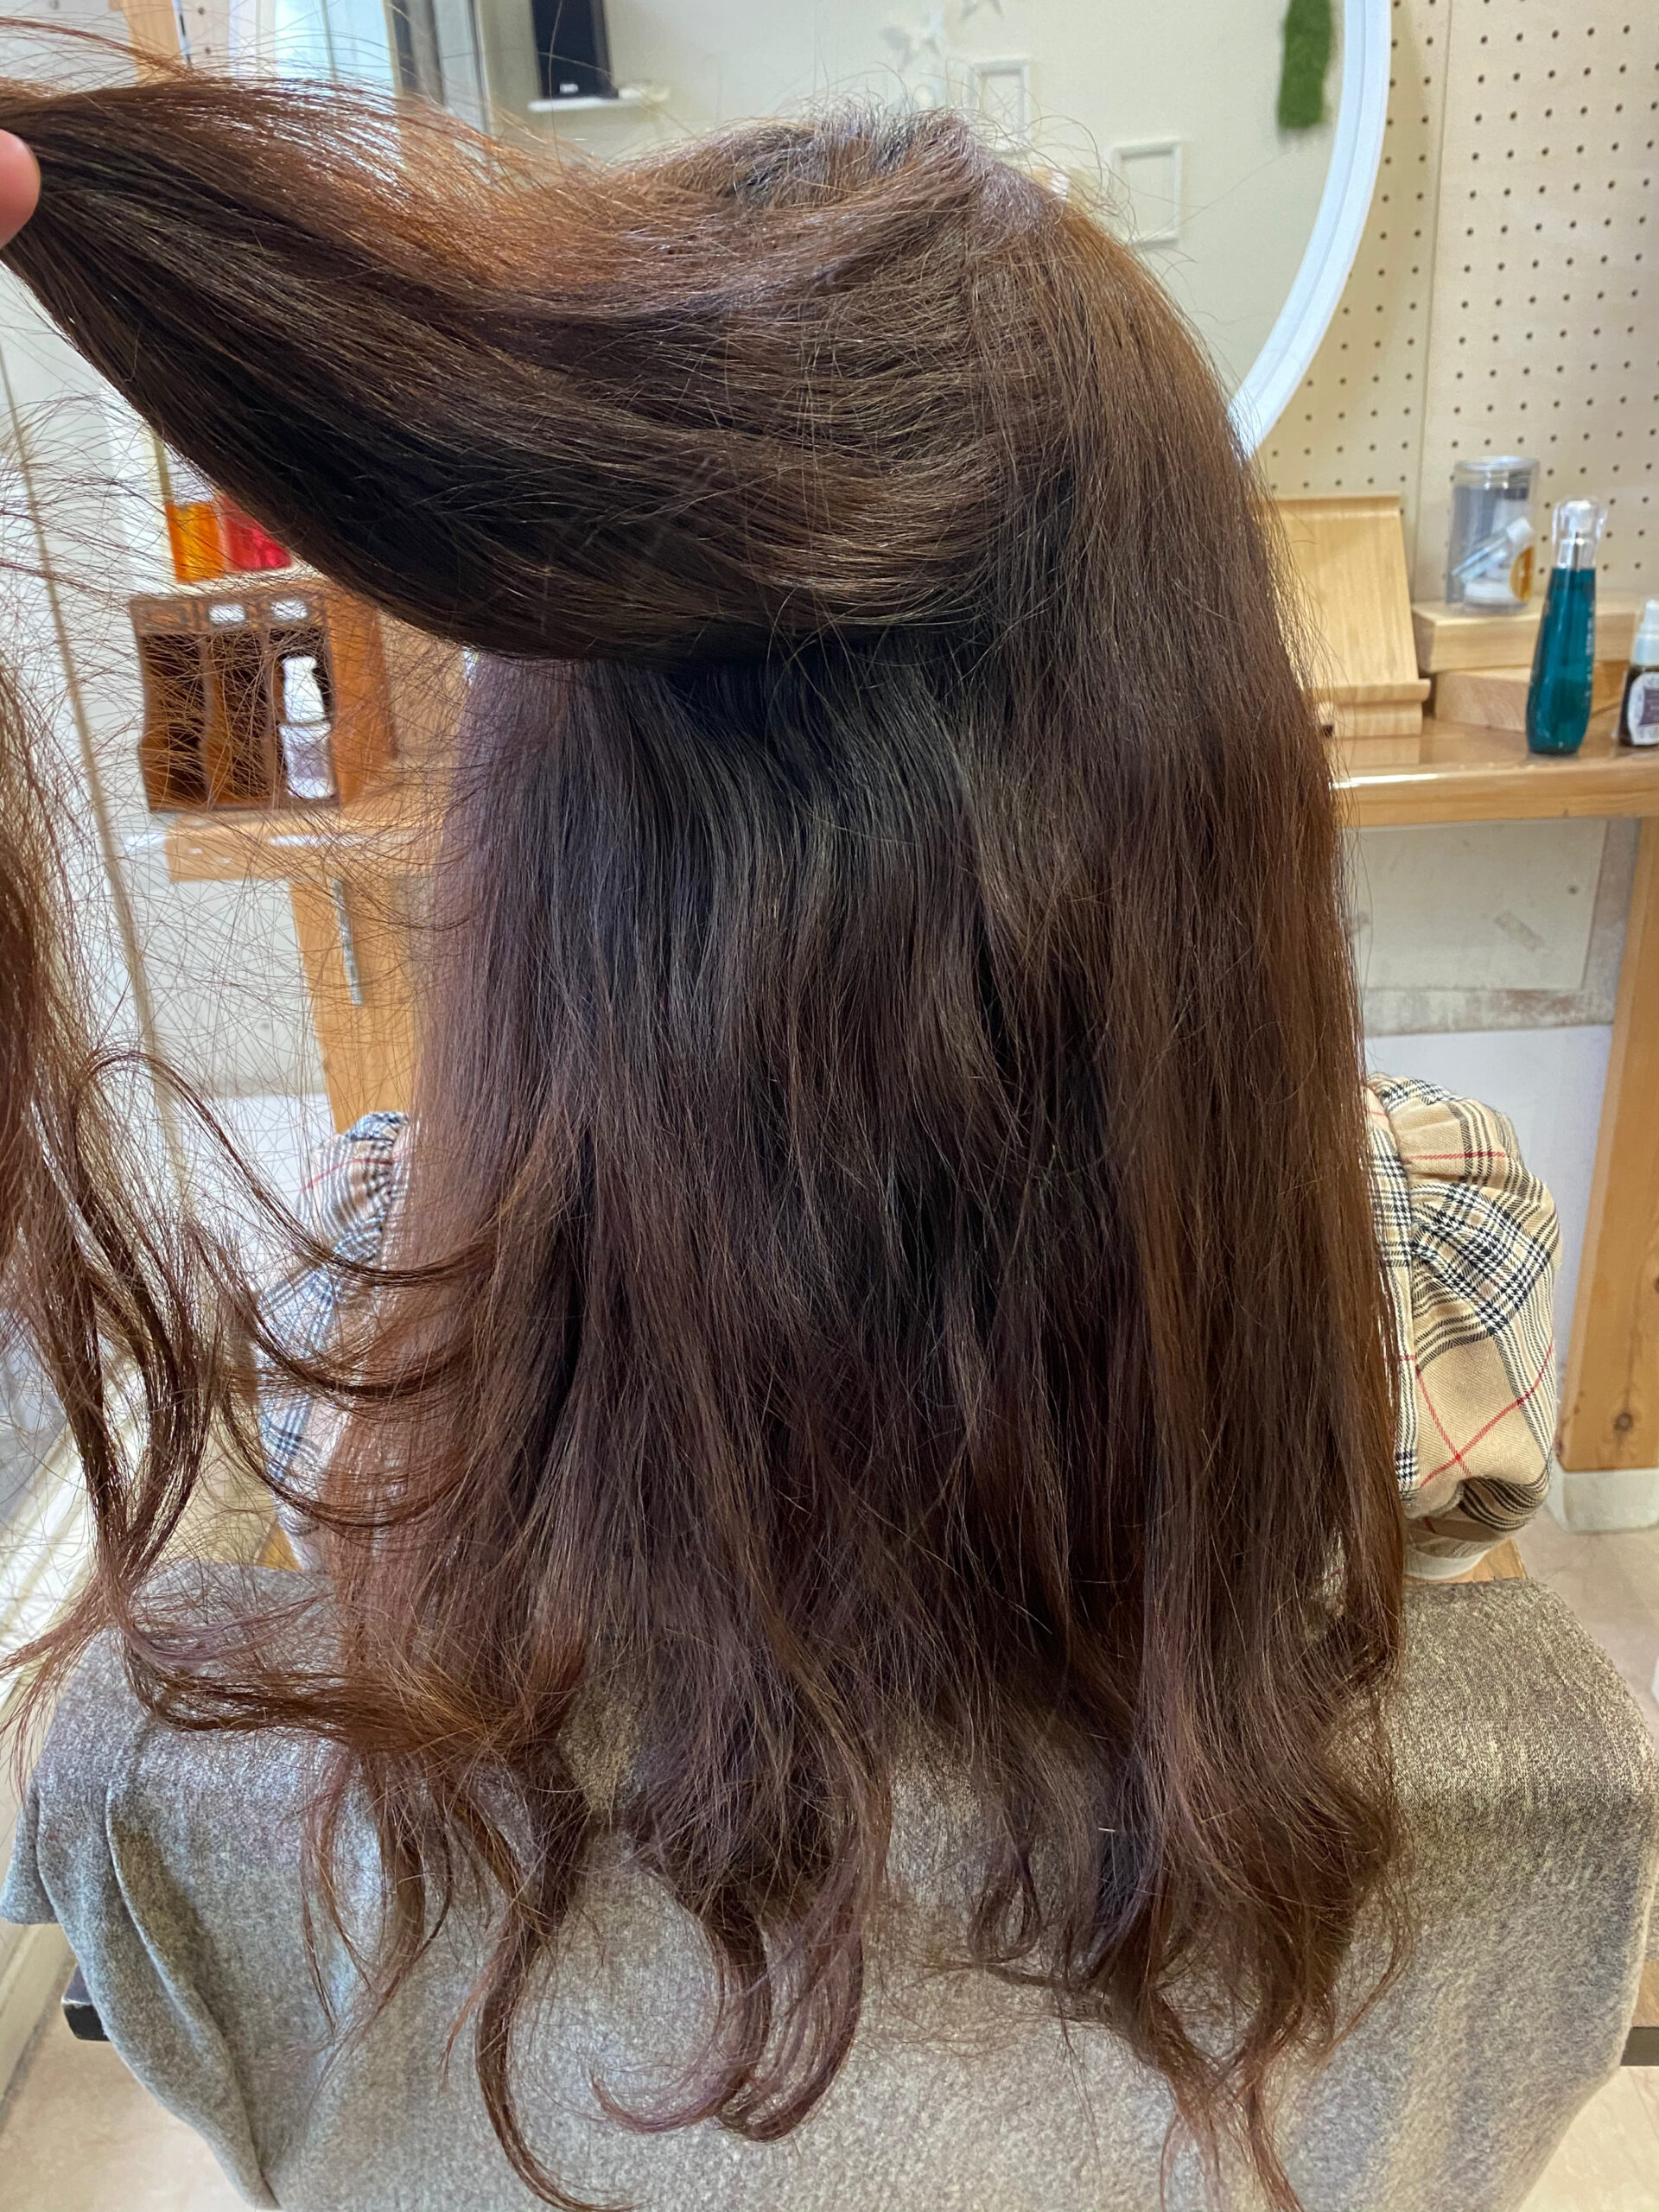 ブリーチとパーマをしている方を【艶髪ストレートヘア】原宿・表参道『髪のお悩みを解決するヘアケア美容師の挑戦』